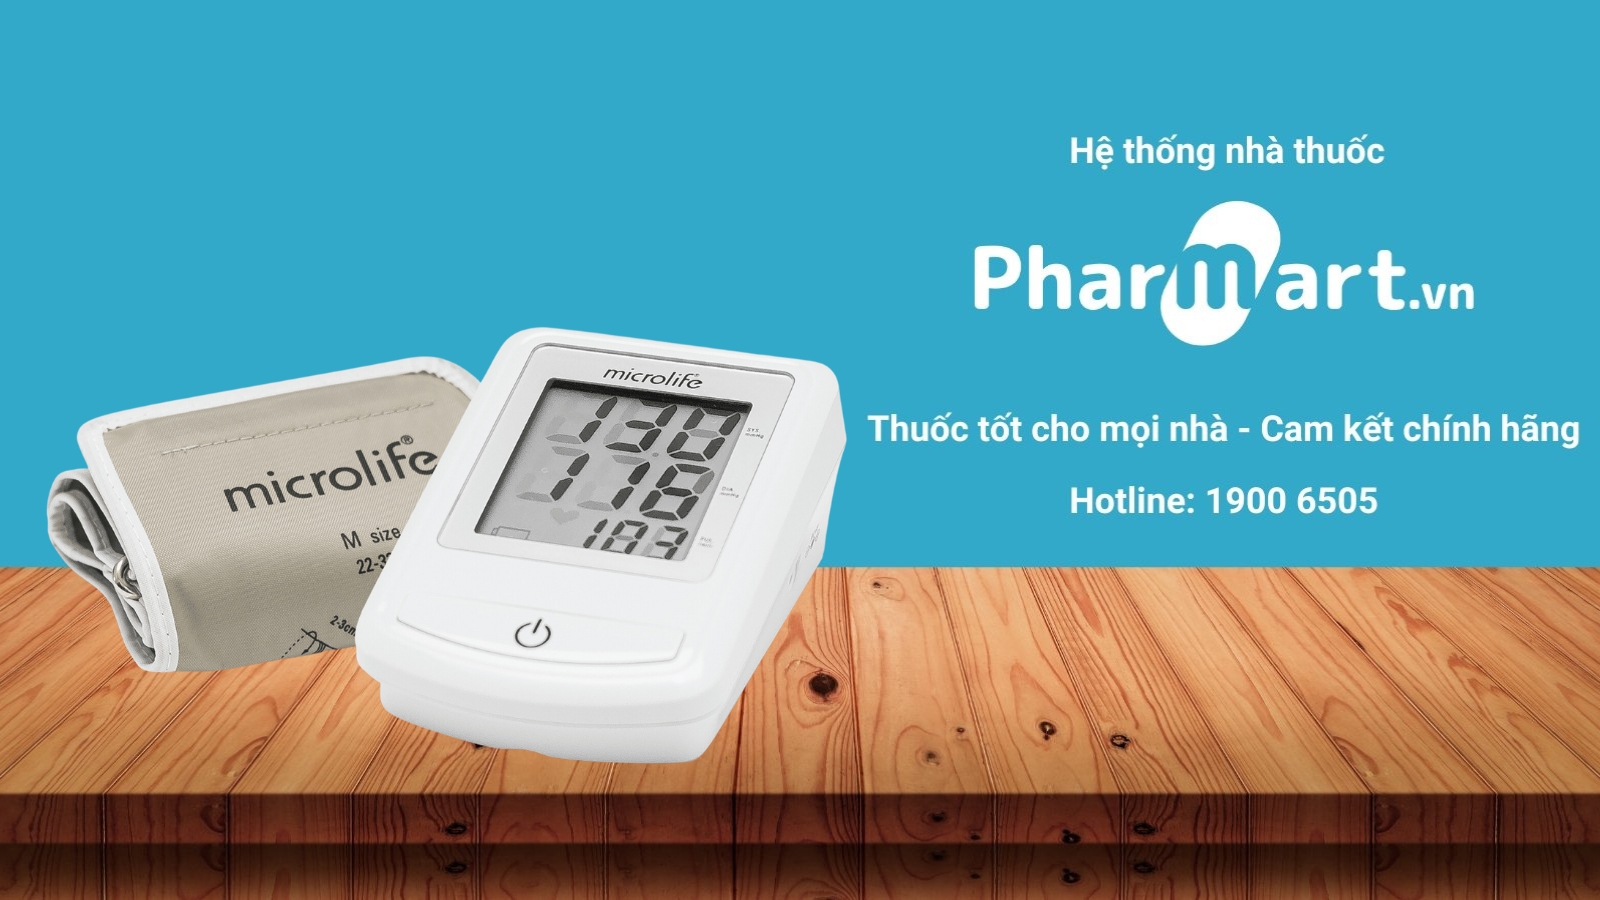 Pharmart.vn - Địa chỉ mua máy đo huyết áp Microlife BP 3NZ1-1P uy tín